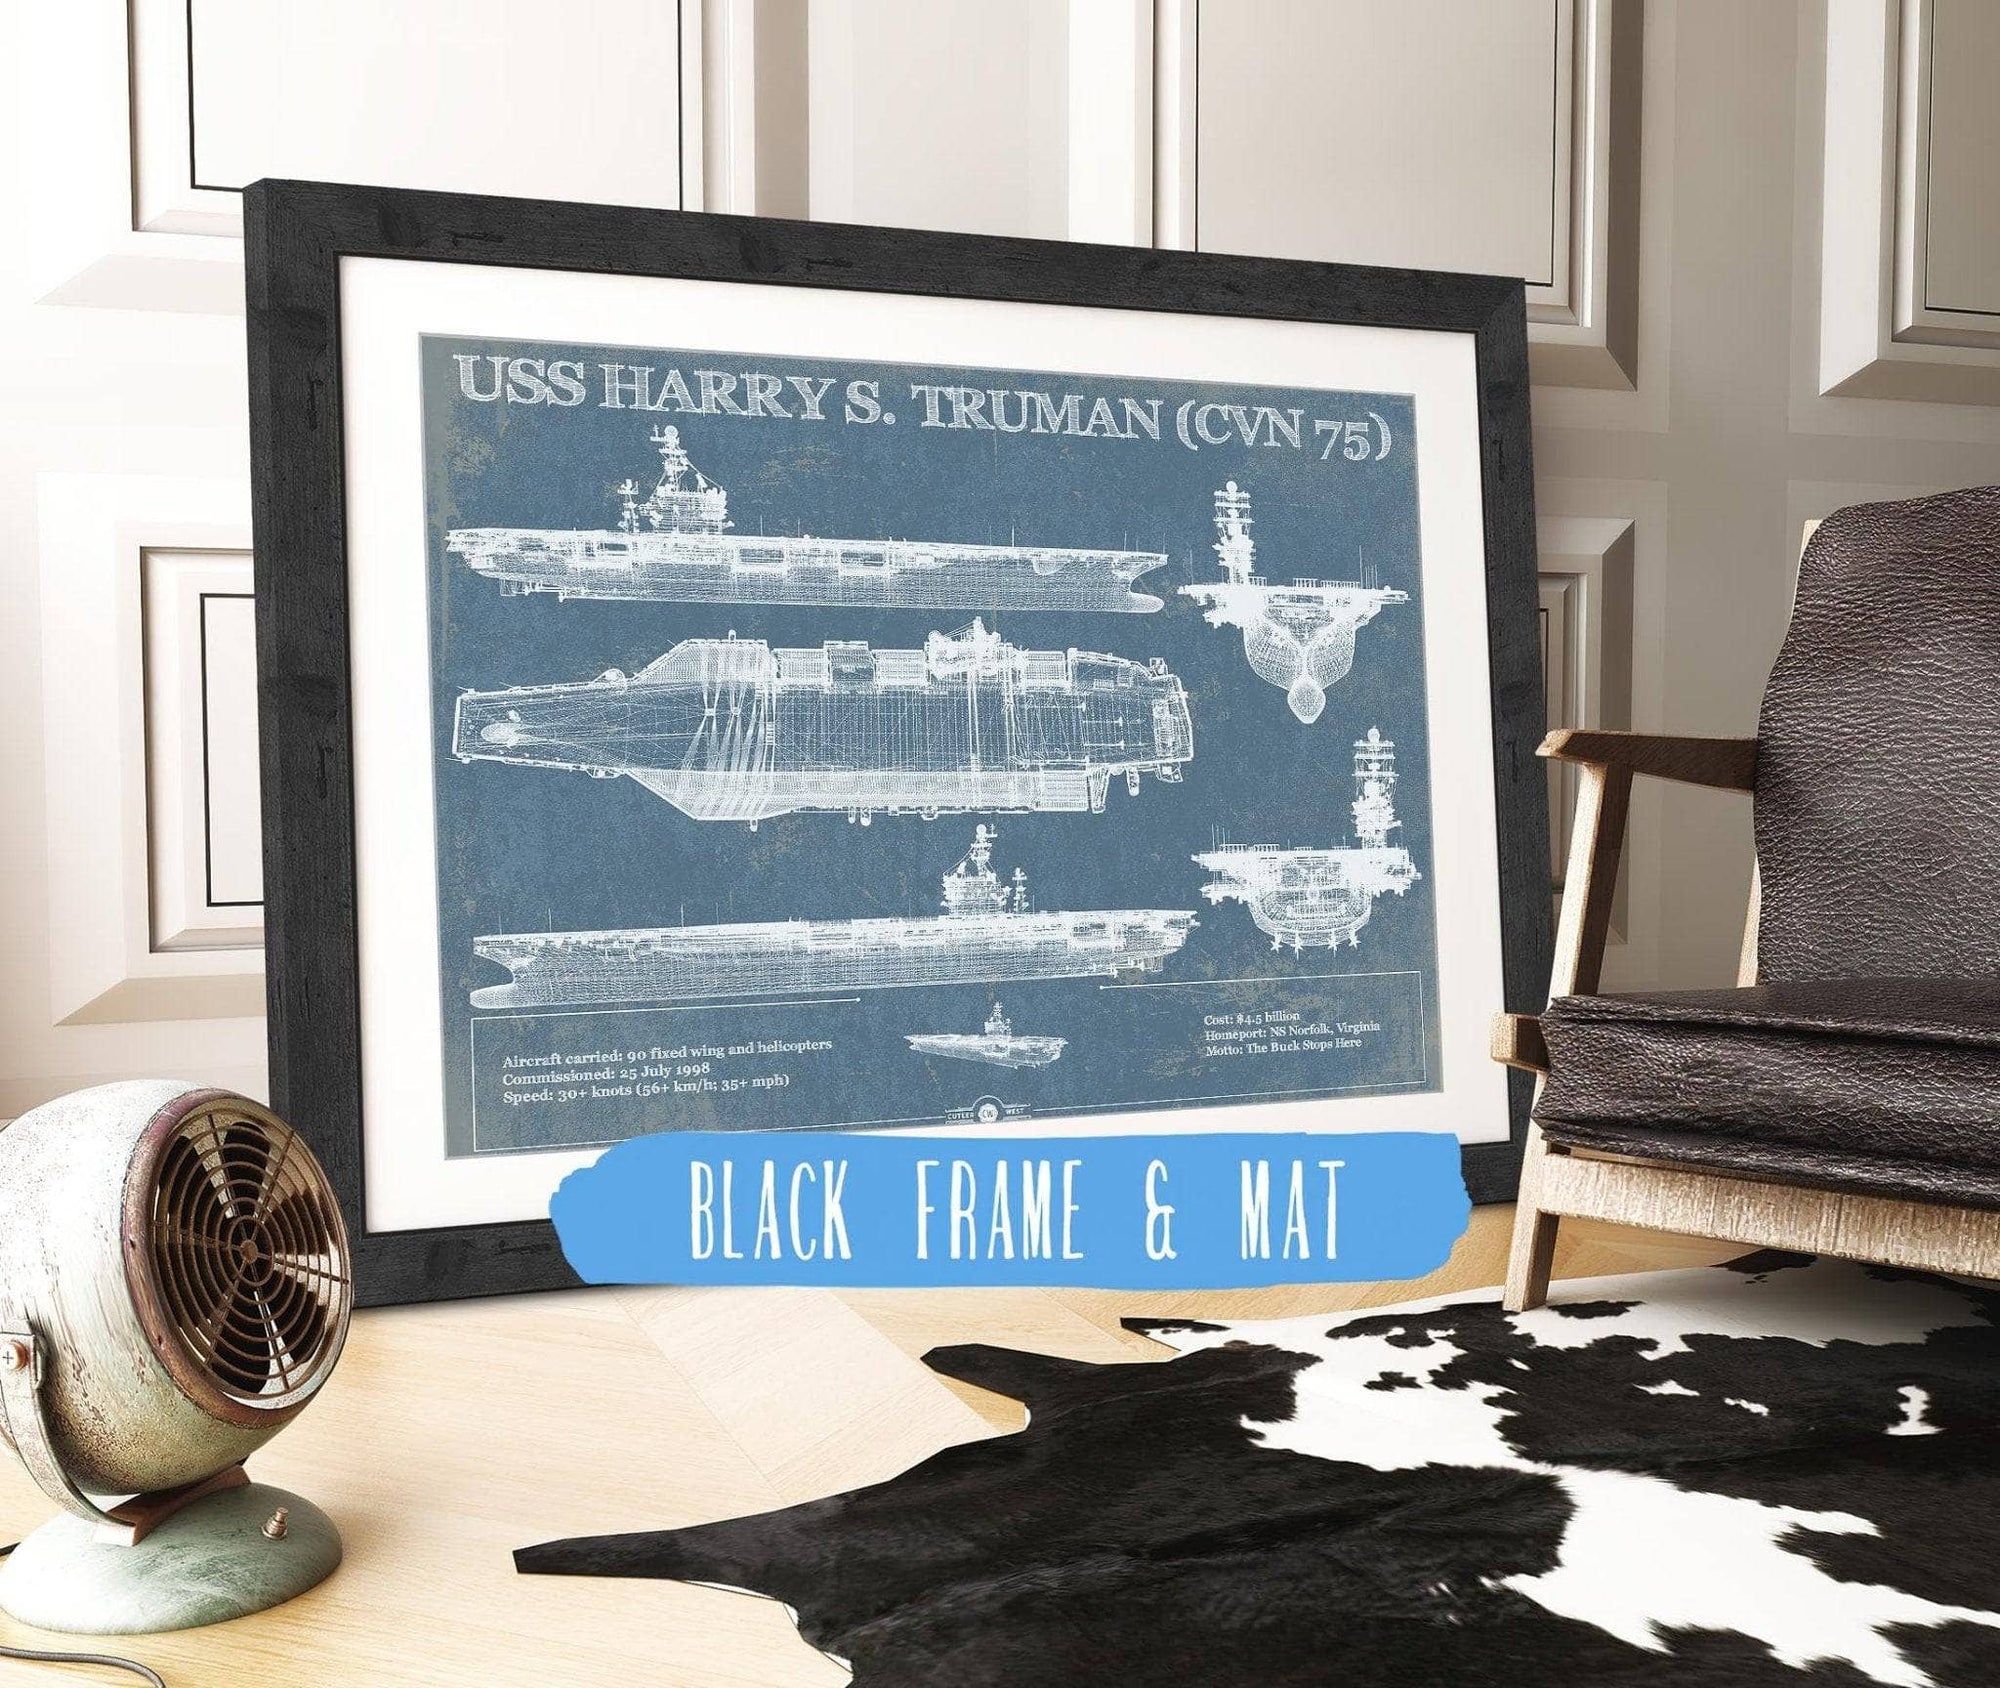 Cutler West Naval Military 14" x 11" / Black Frame & Mat USS Harry S. Truman (CVN 75) Aircraft Carrier Blueprint Original Military Wall Art 835000056_24336